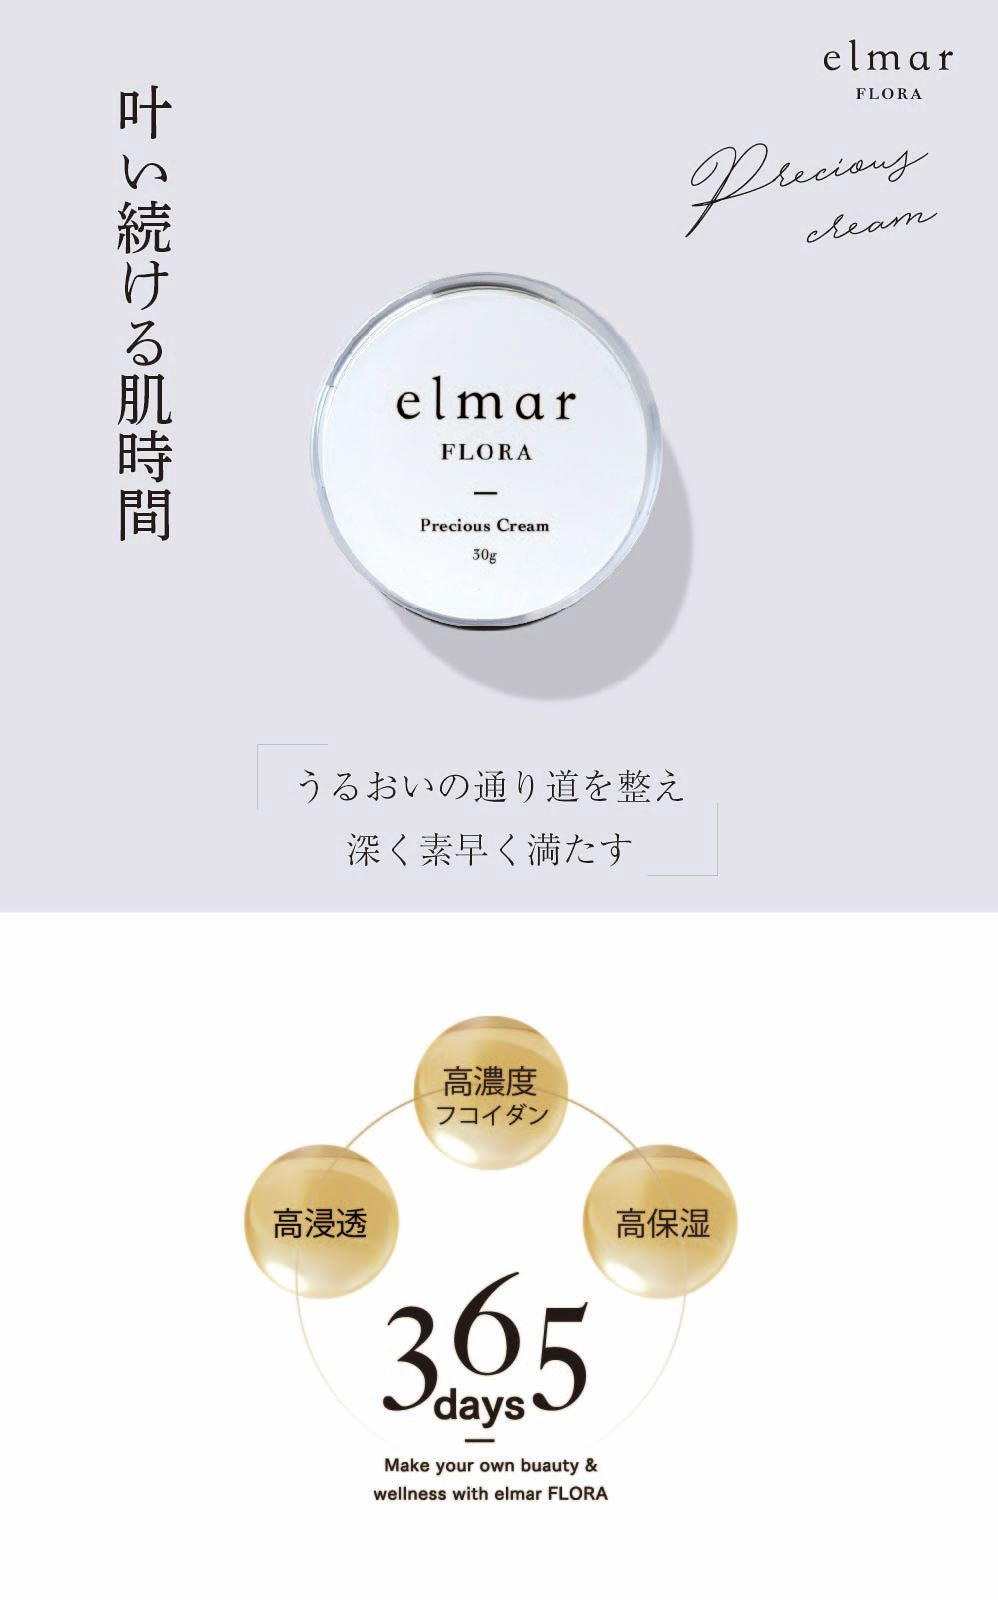 elmar FLORA Precious Cream 30g Elmar Flora Precious Cream